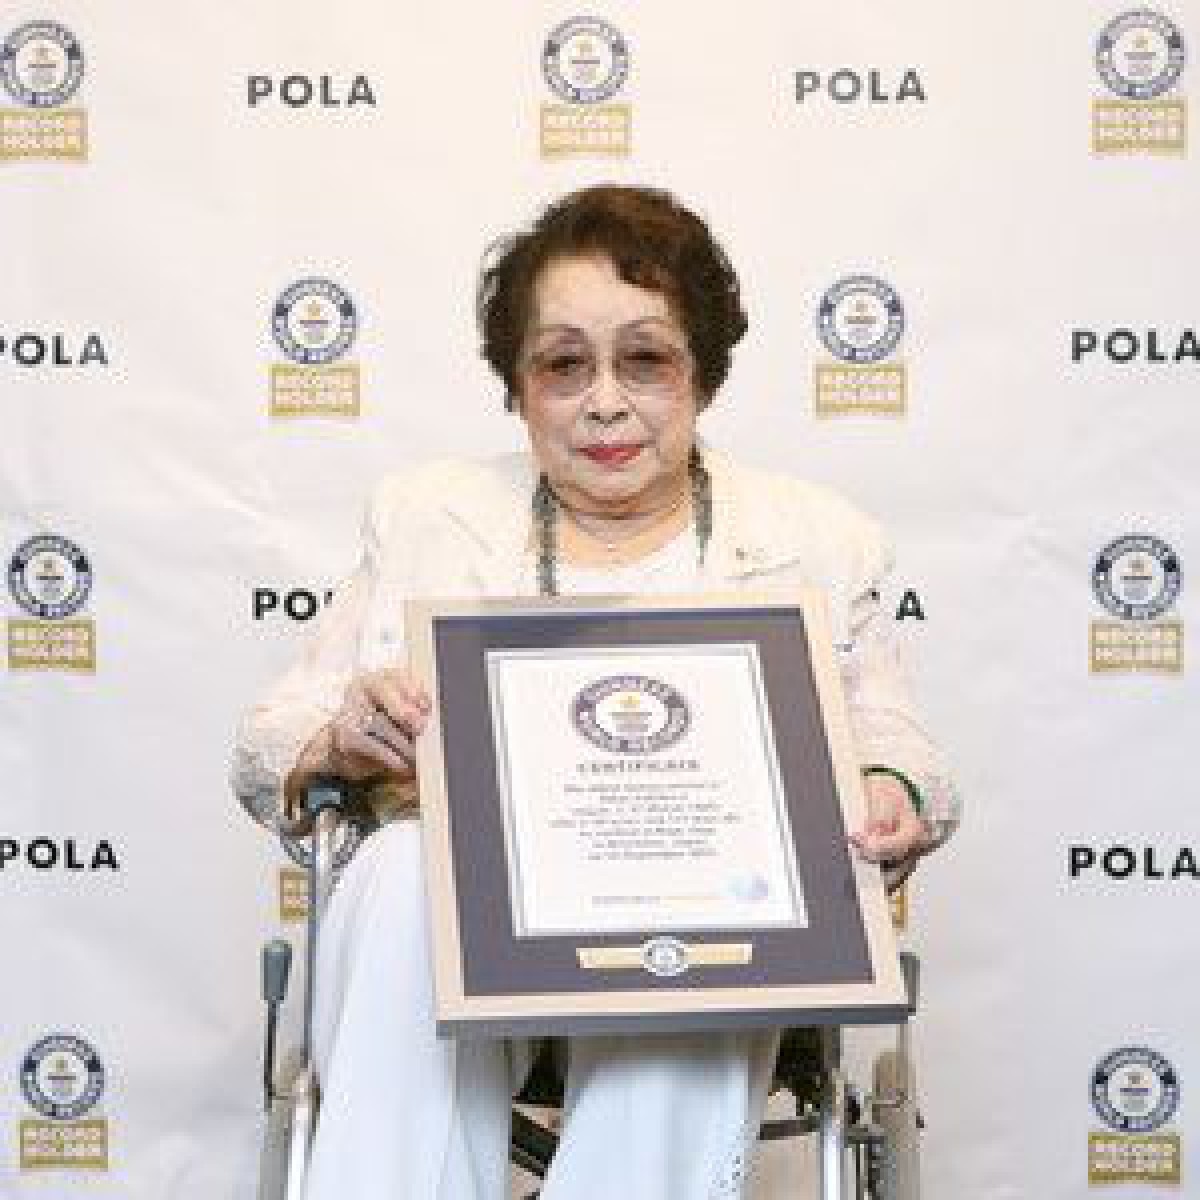 ポーラのビューティーディレクター99歳が「最高齢のビューティーアドバイザー」でギネス世界記録に認定